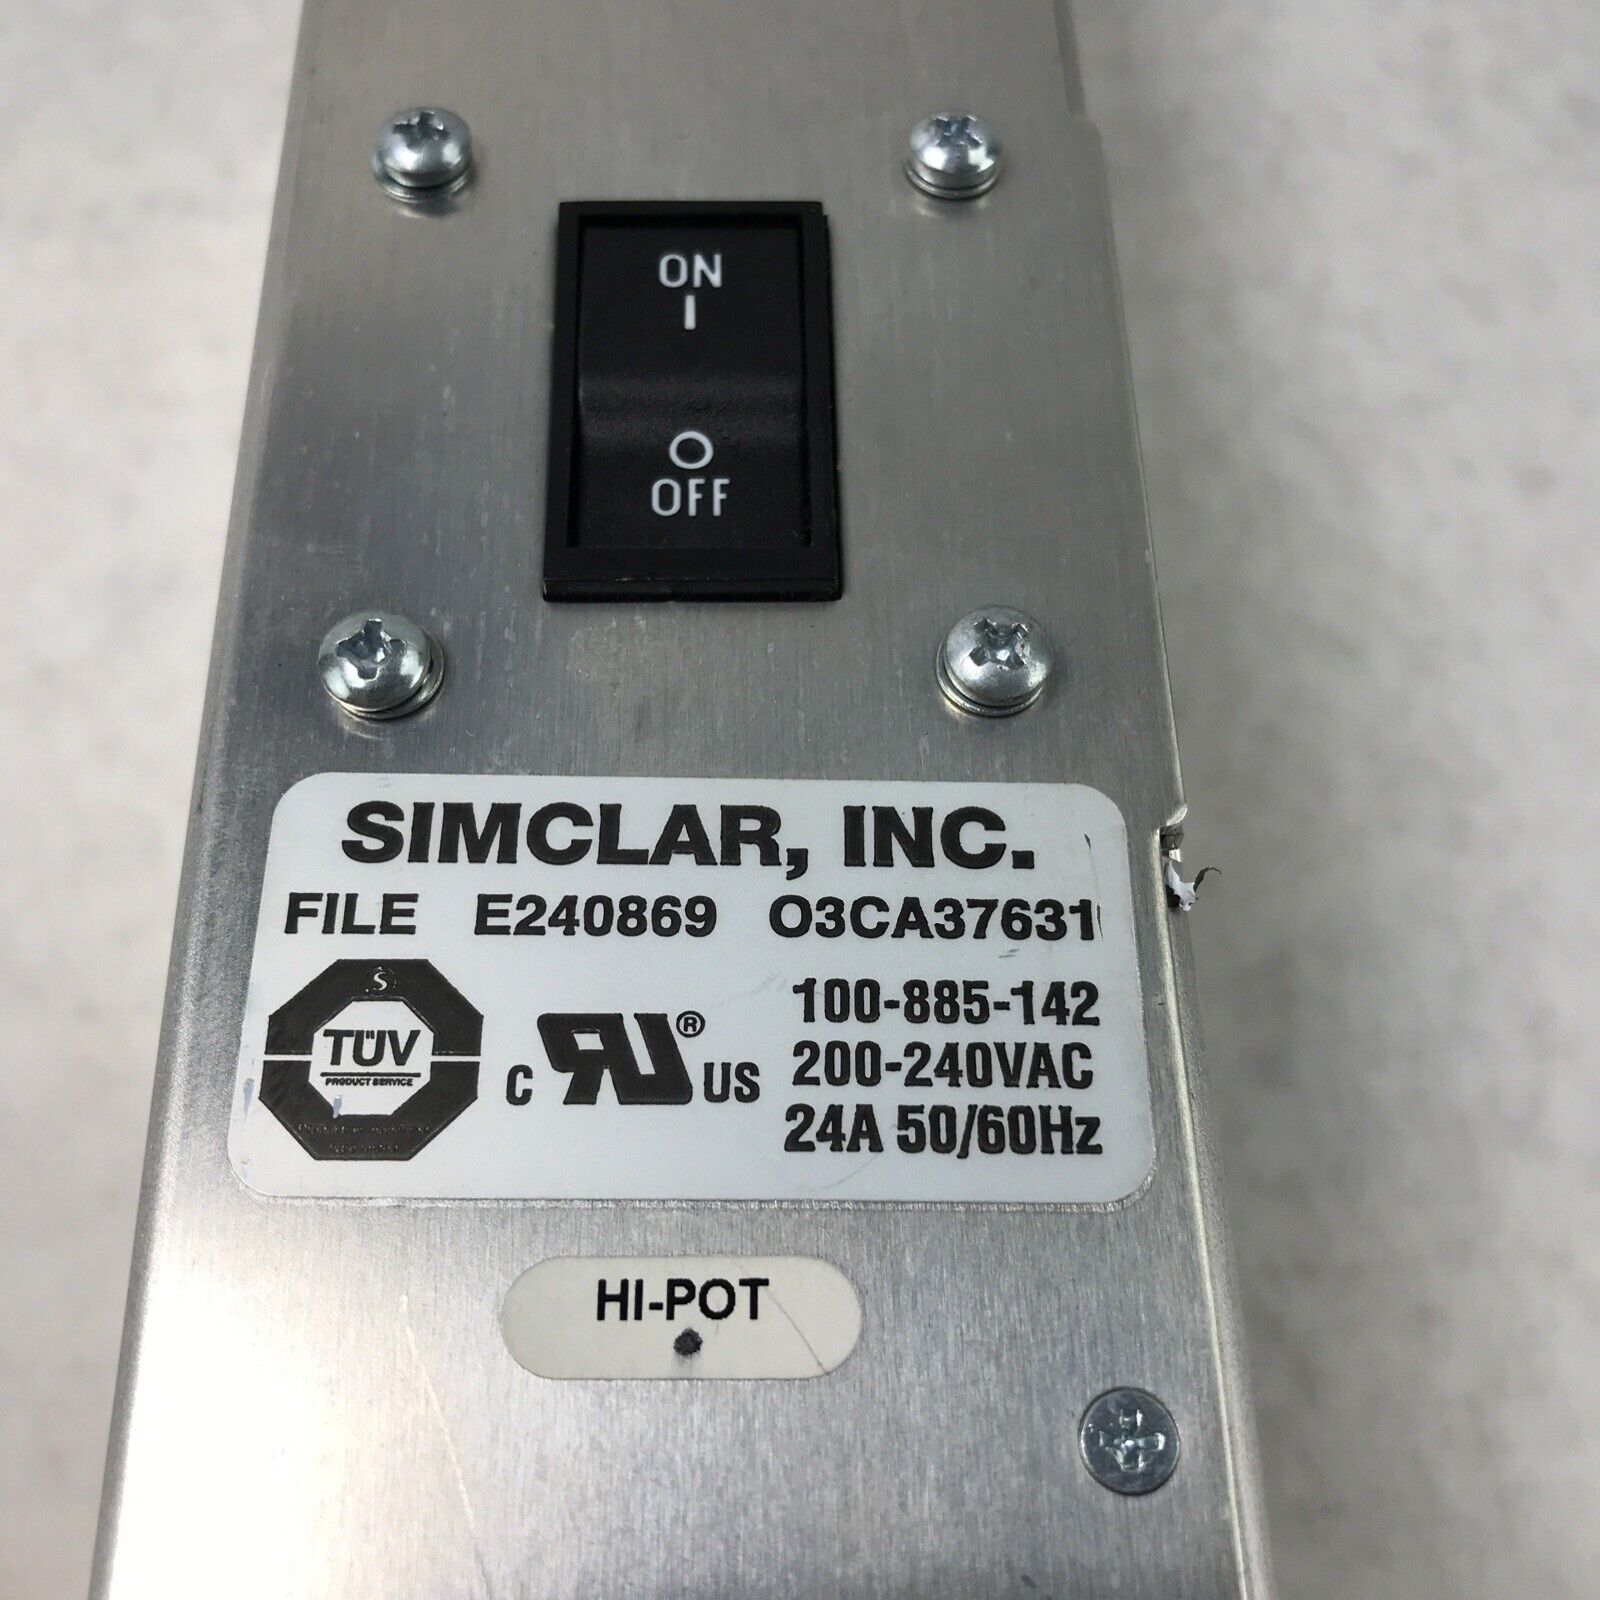 Simclar 100-885-142 E240869 Power Adapter